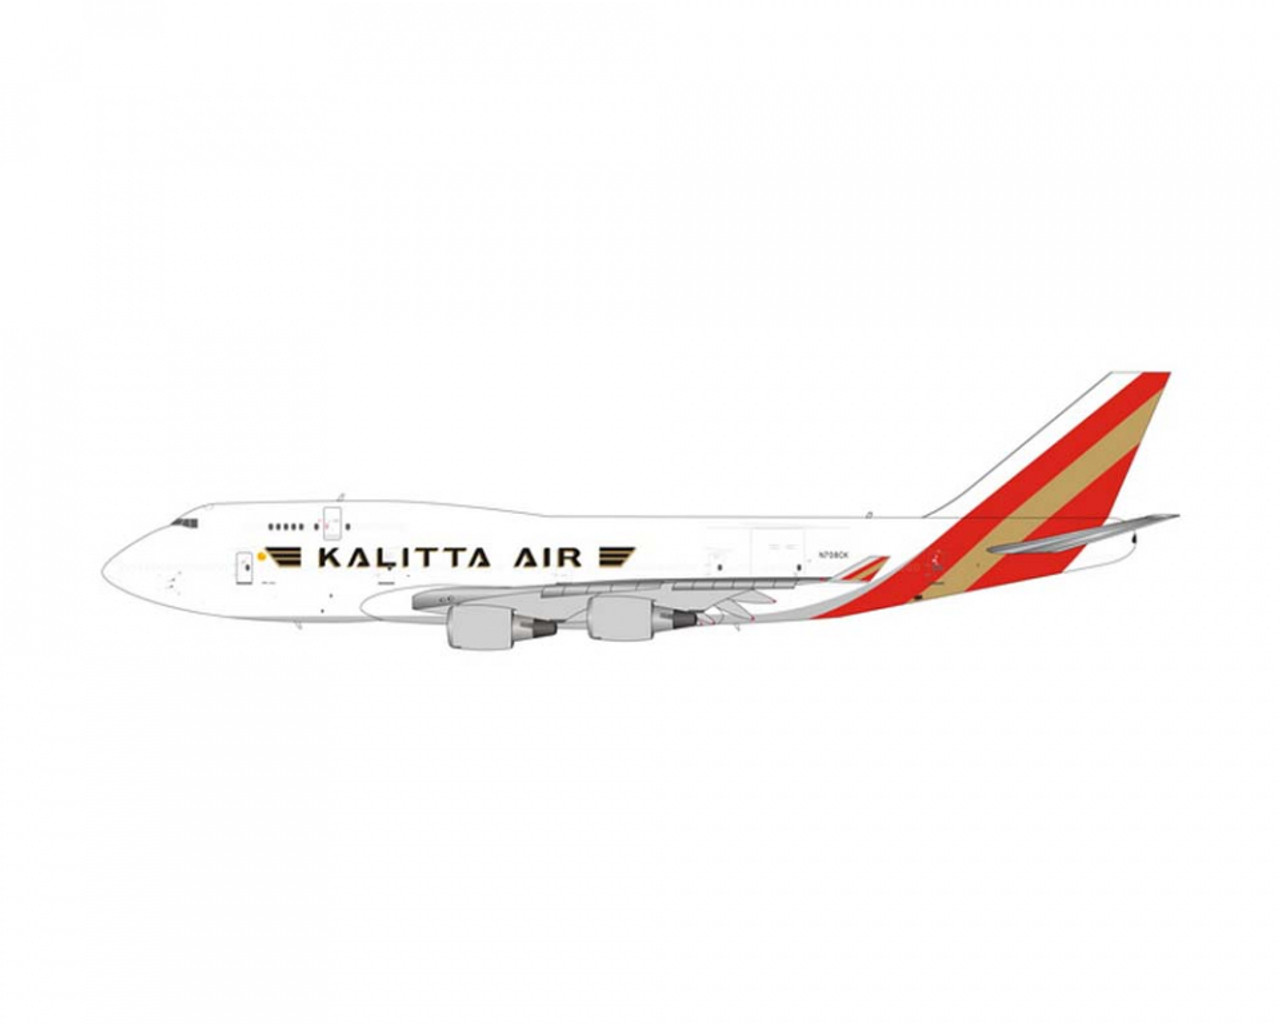 PH400 Kalitta Air B747-400(BCF) N708CK